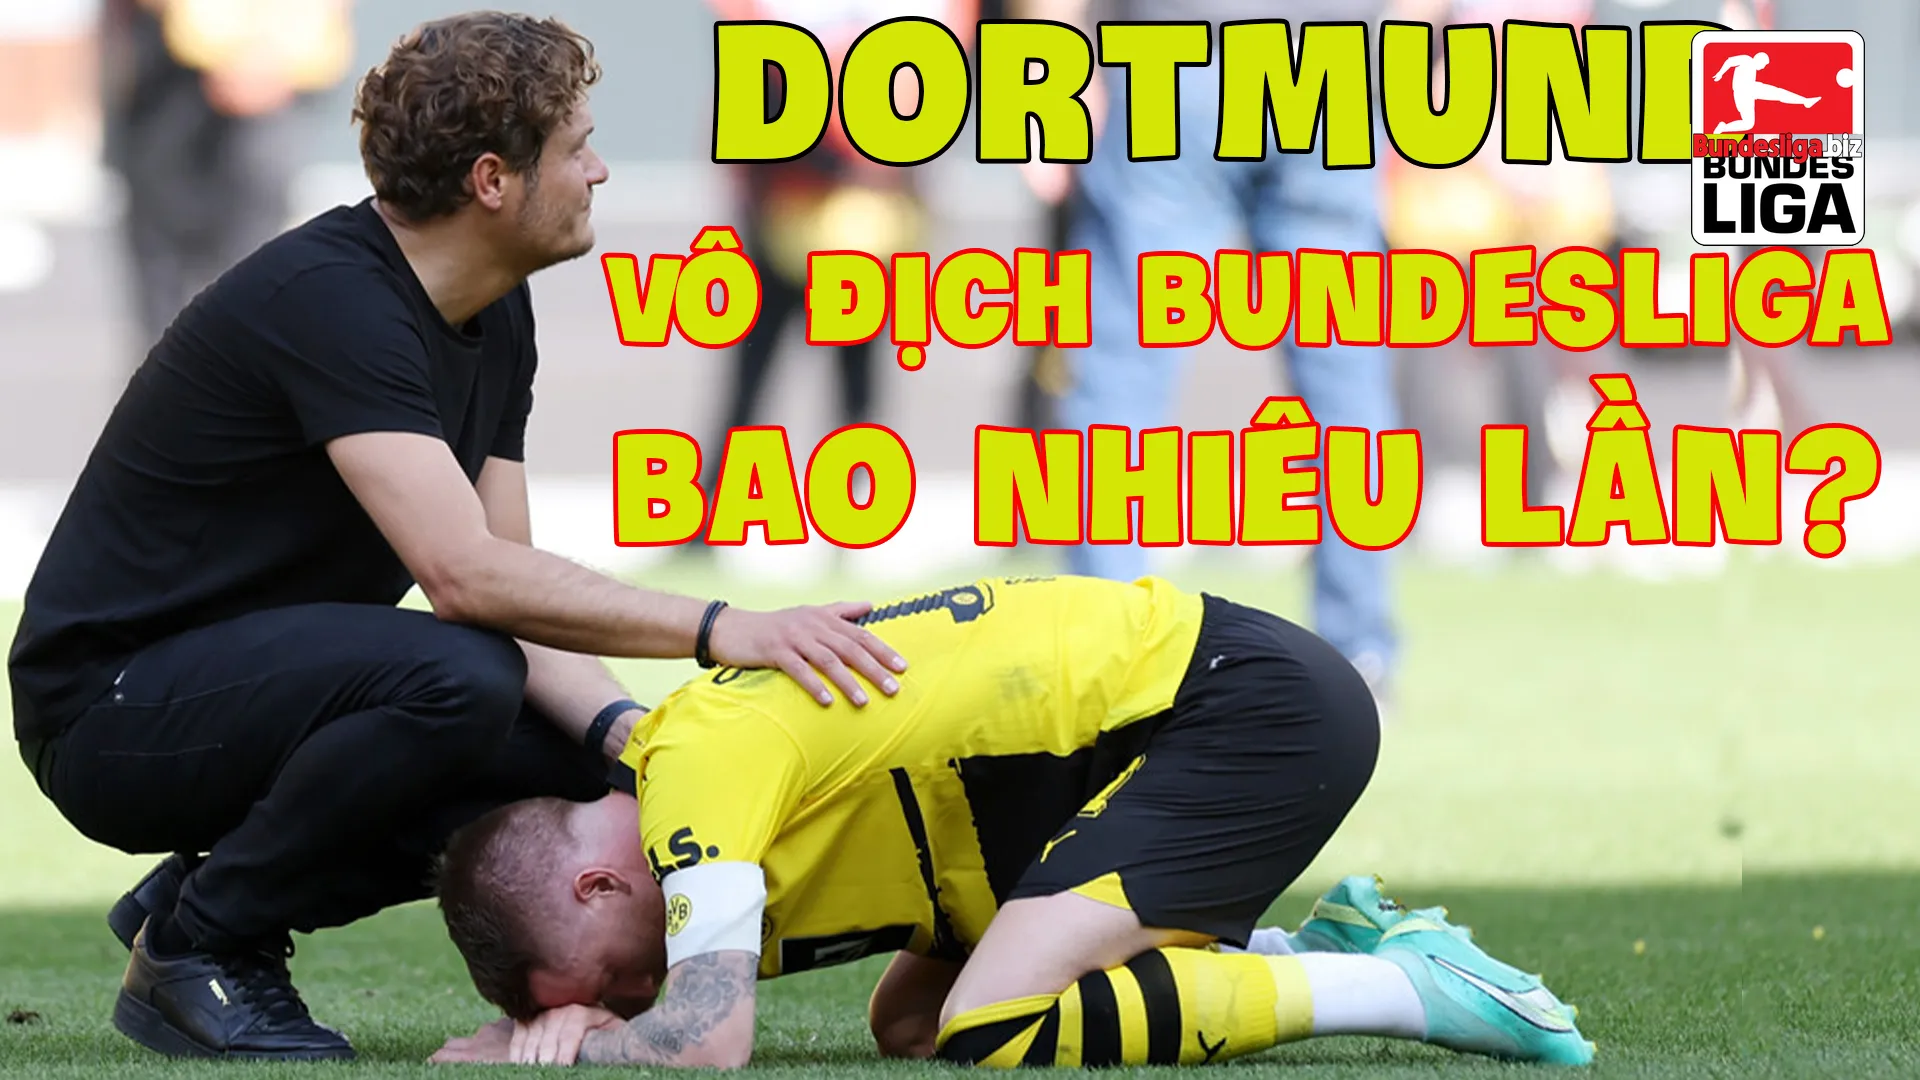 Dortmund vô địch Bundesliga bao nhiêu lần? Lần gần nhất Dortmund vô địch là khi nào?